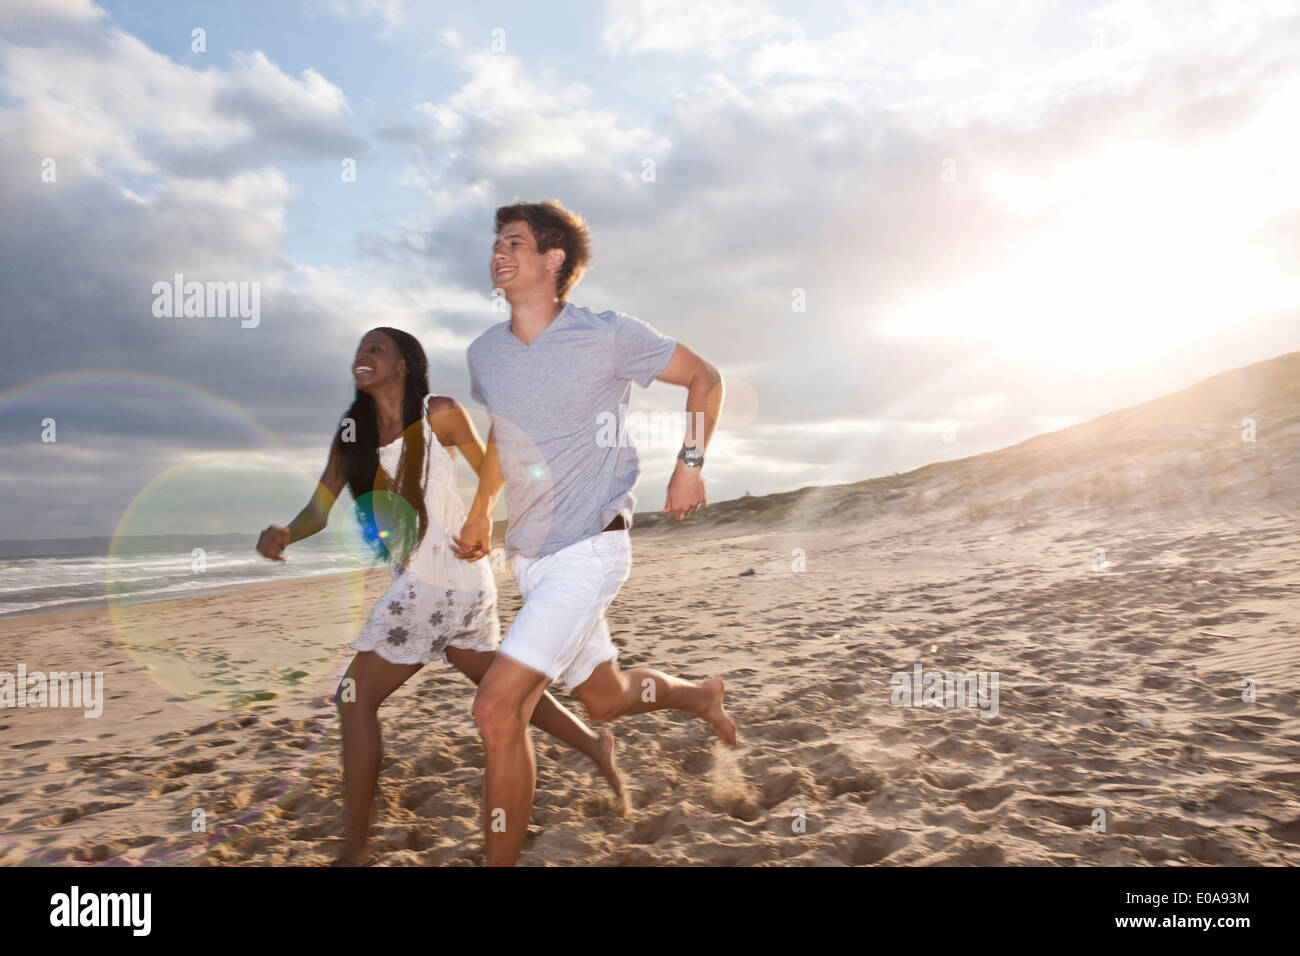 Junges Paar am Strand laufen Stockfoto